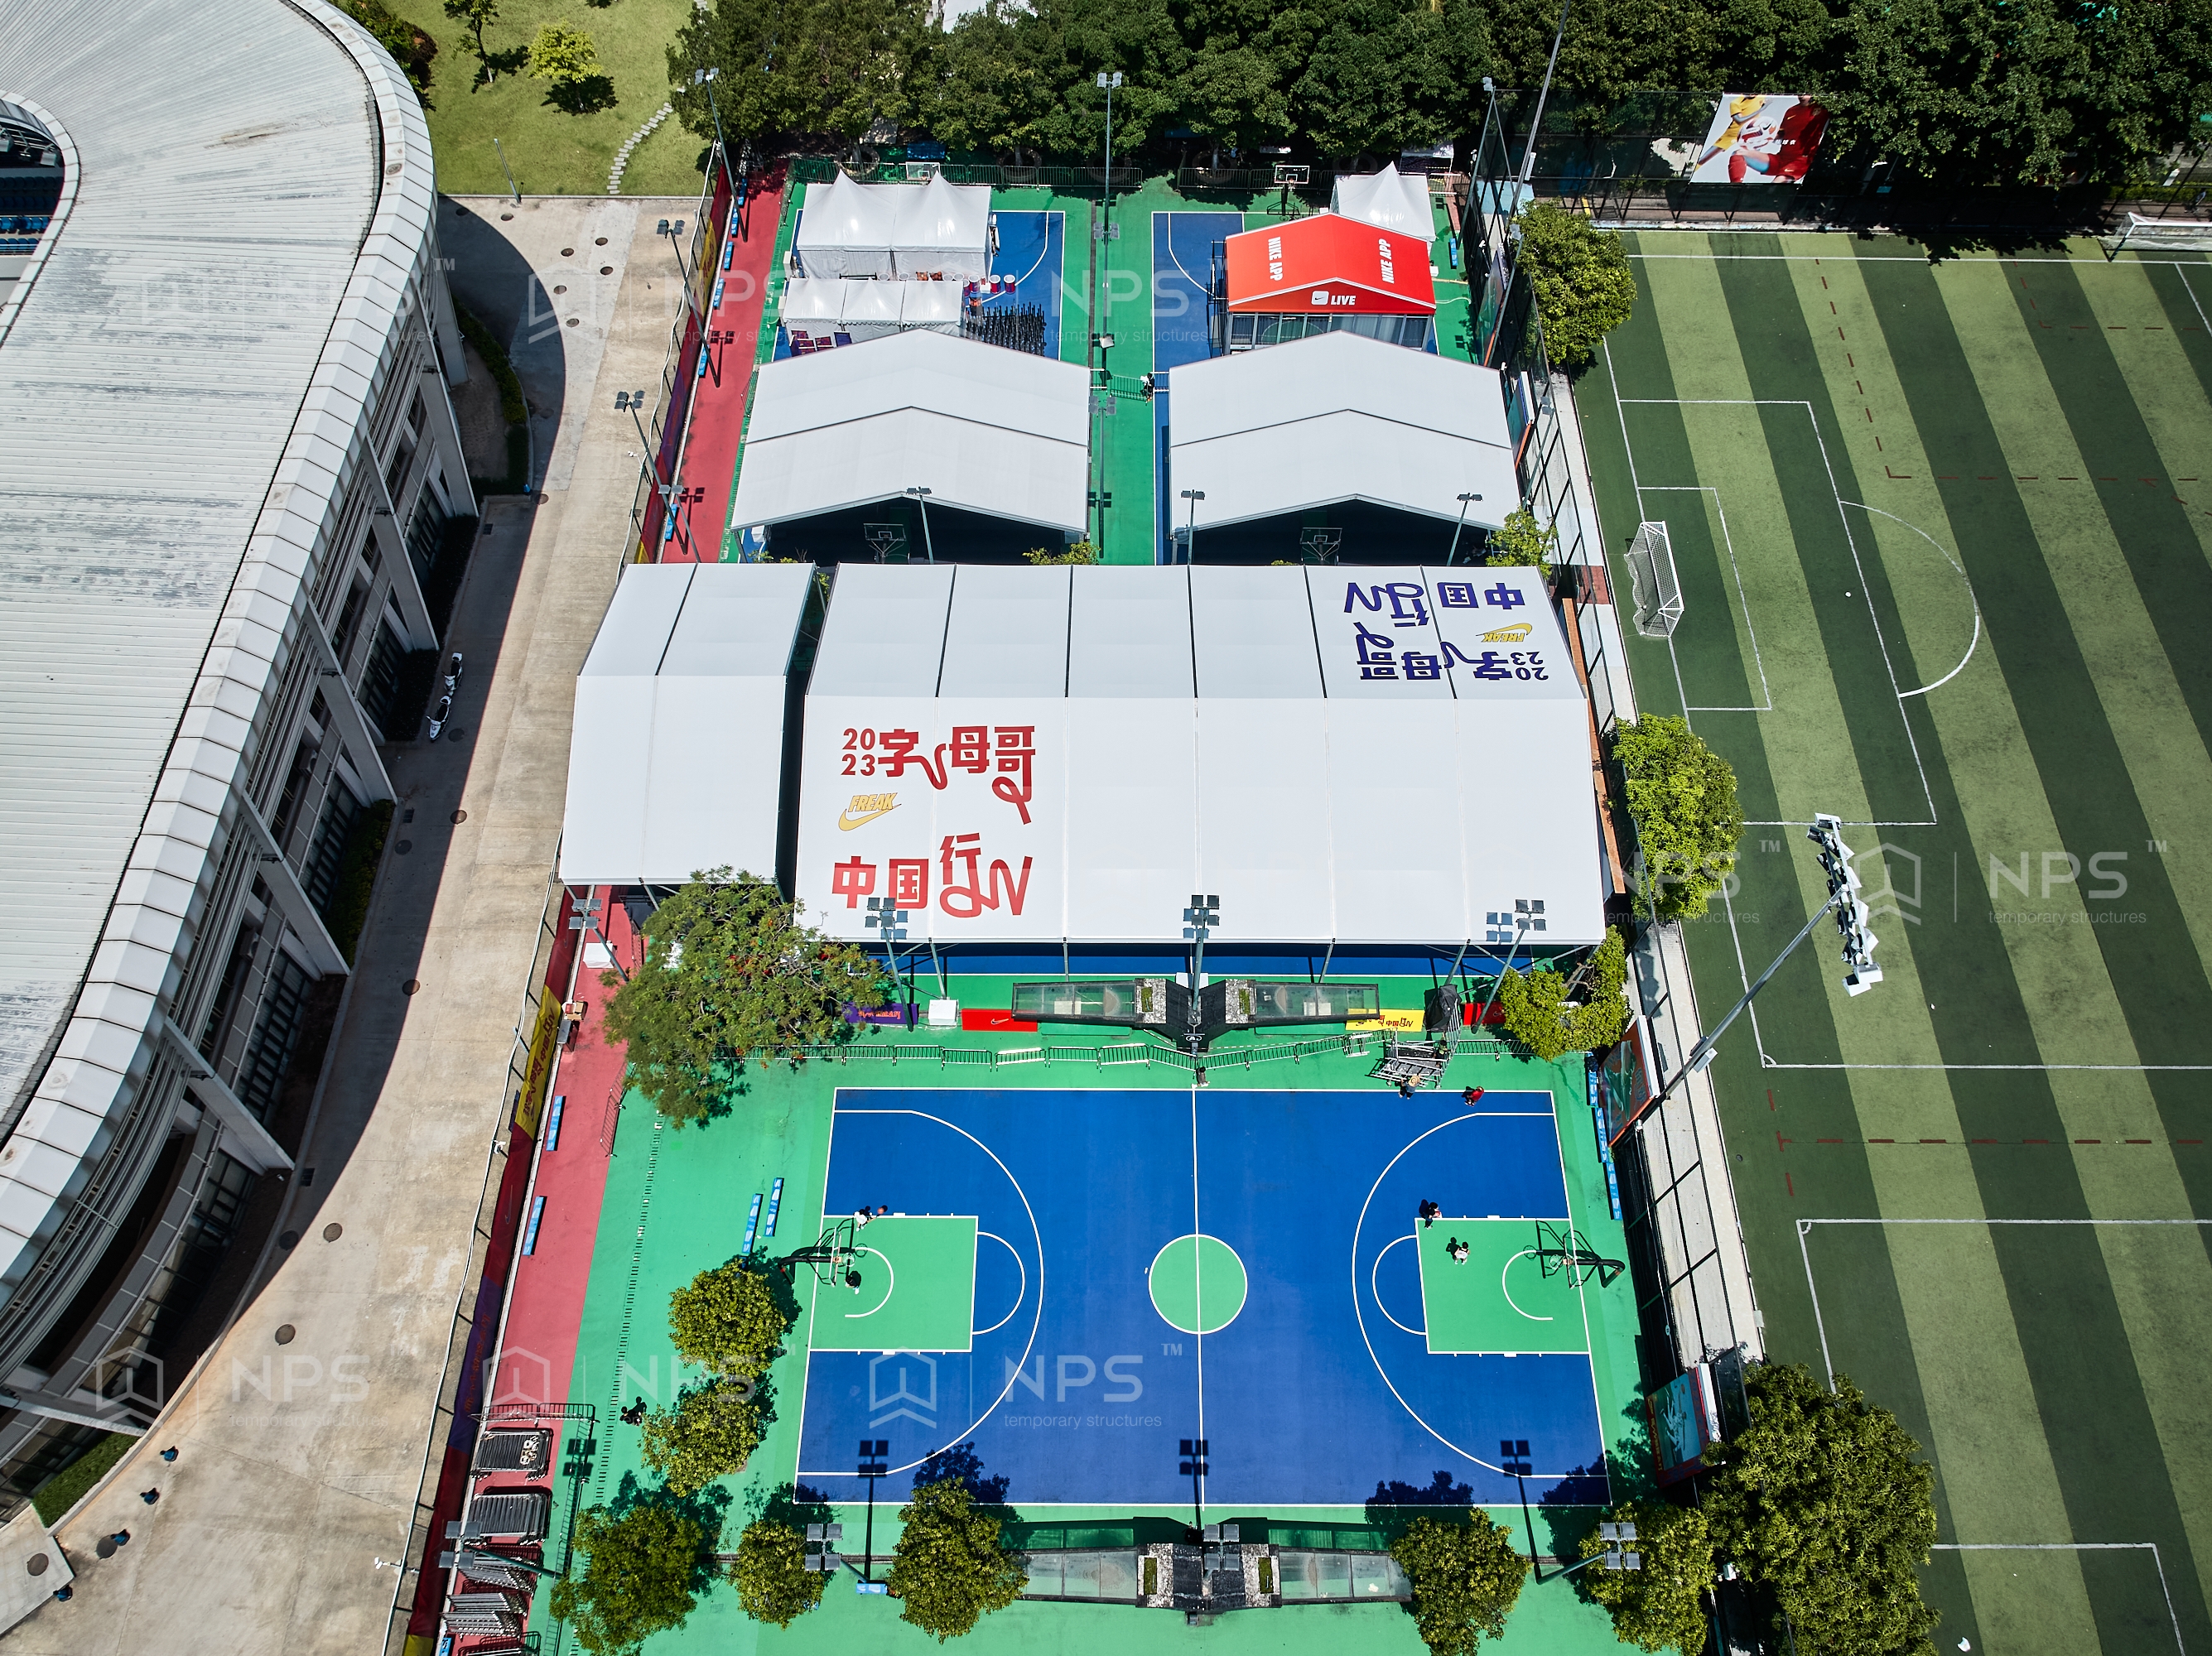 2023NBA字母哥中国行，NPS奈柏可移动建筑为其提供高品质体育篷房-电商科技网